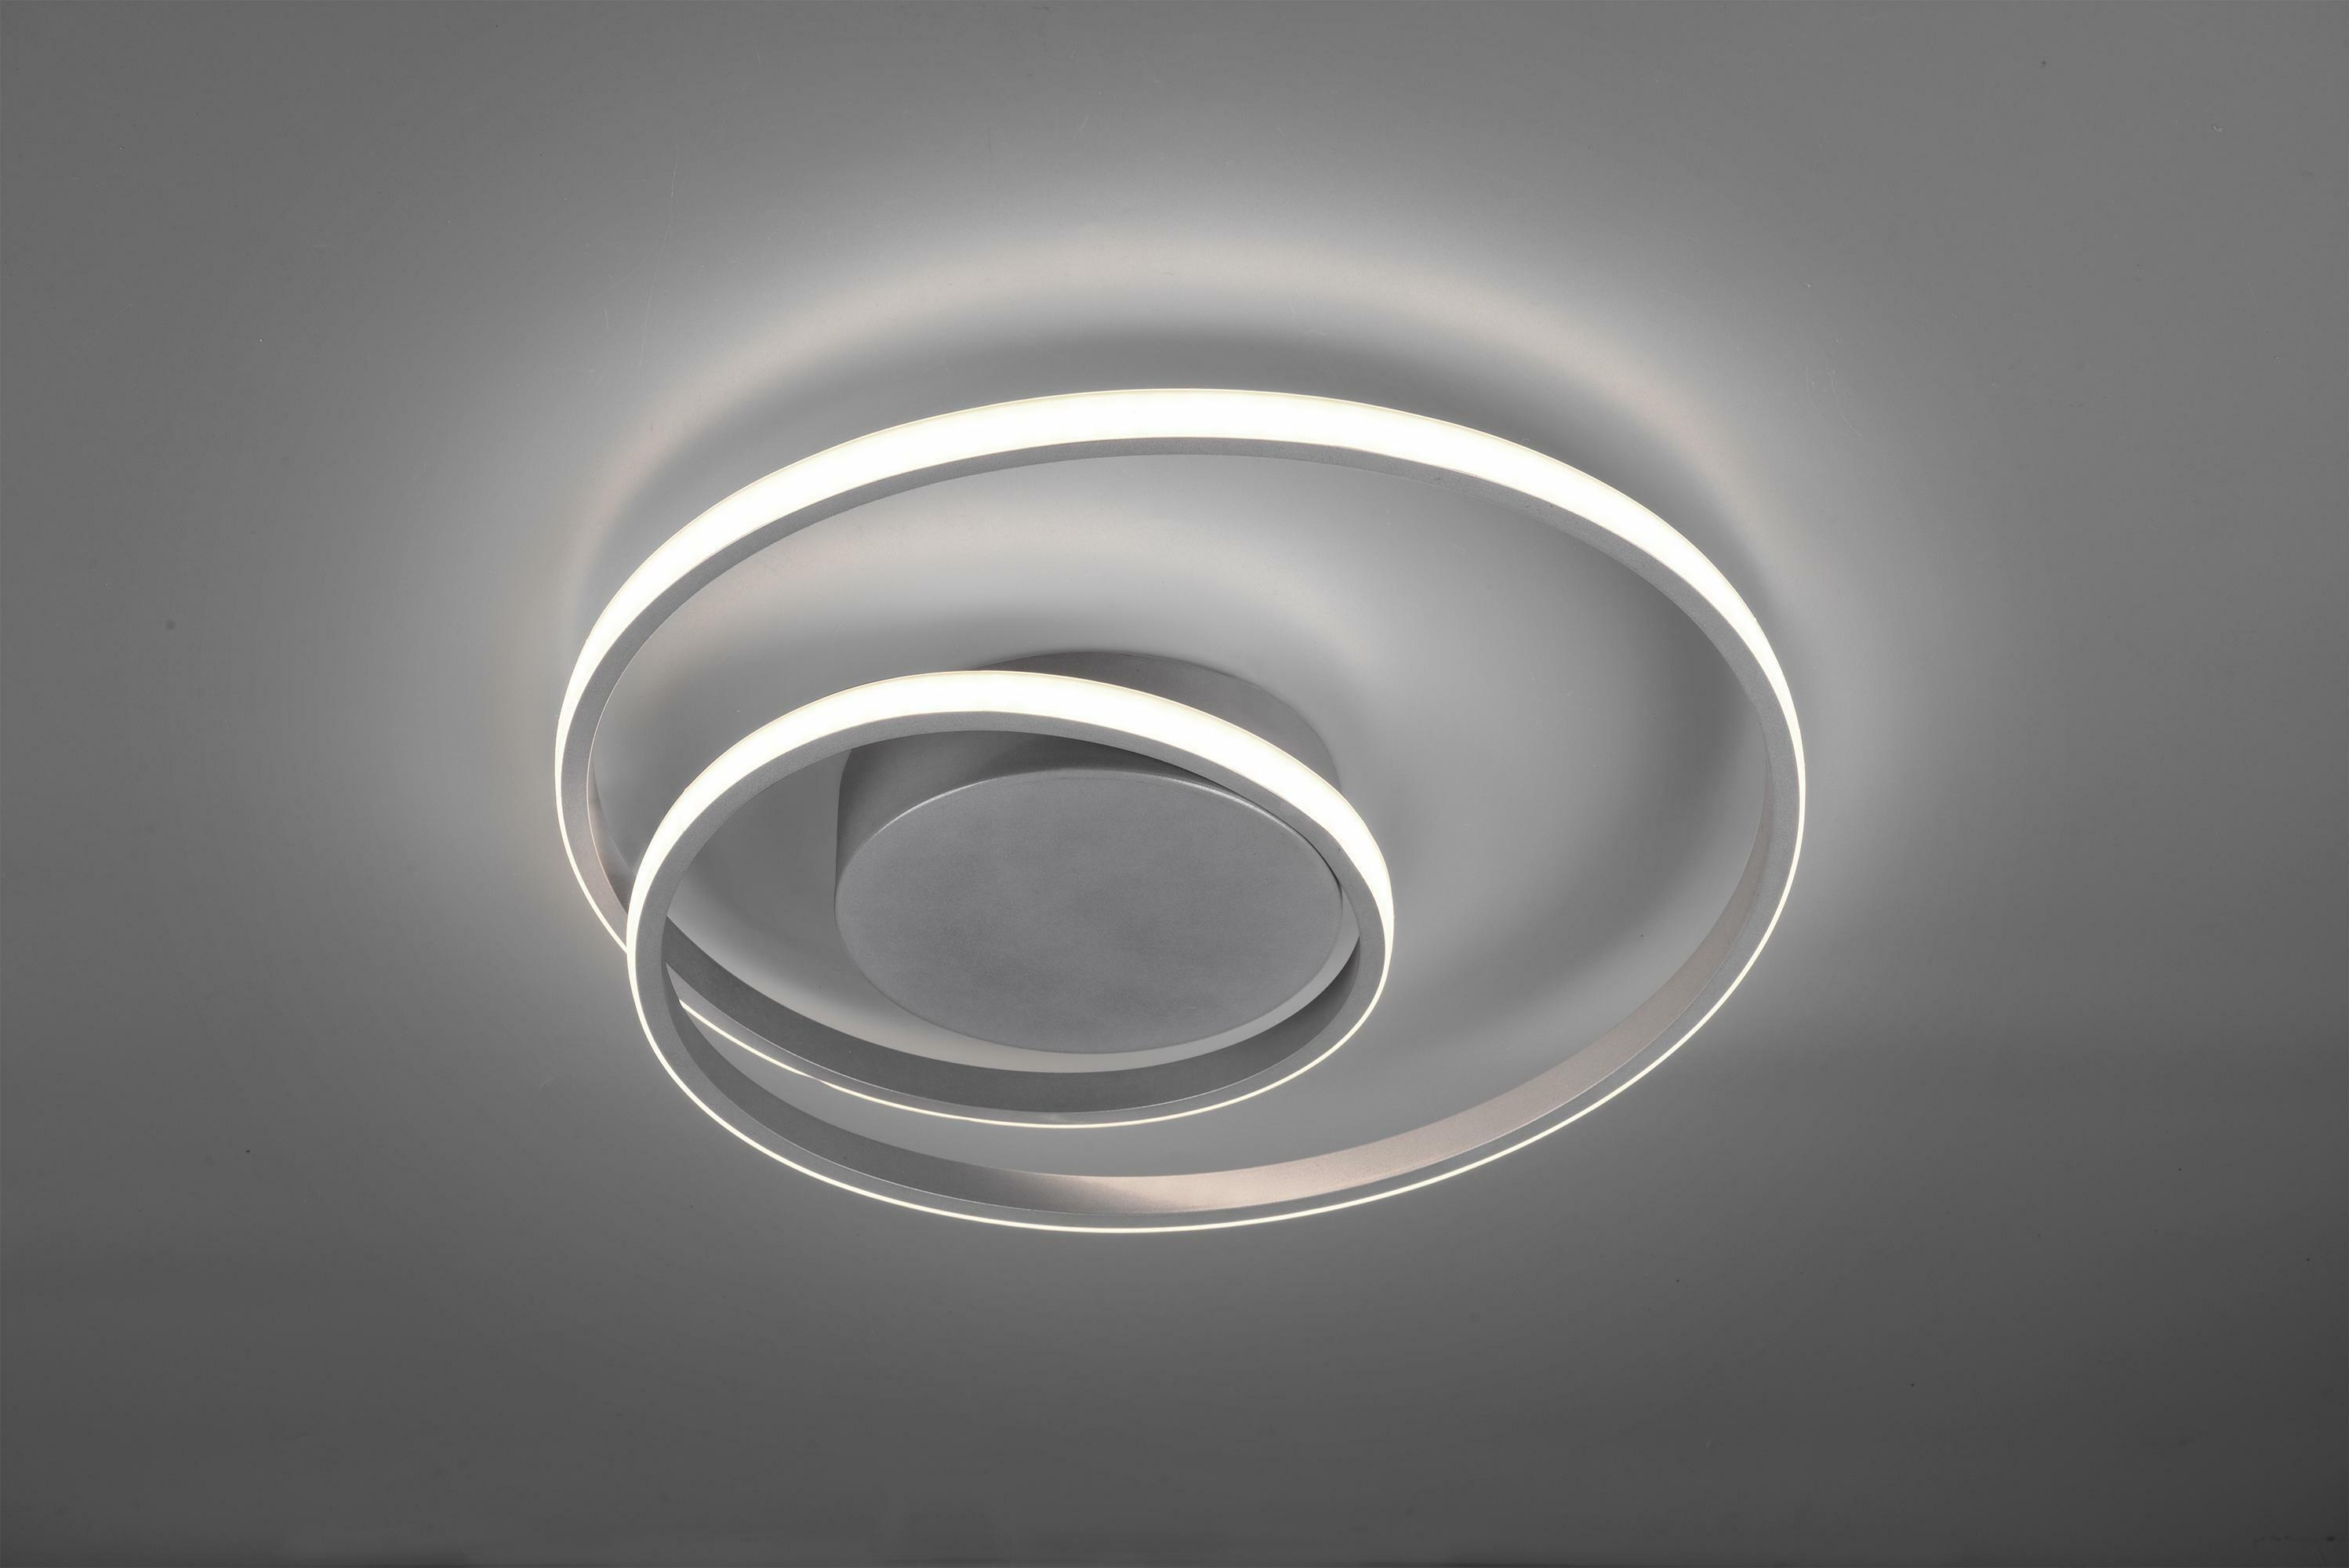 trio lighting zibal plafoniera led spirale alluminio con regolazione intensita' interruttore d.40cm r62911187